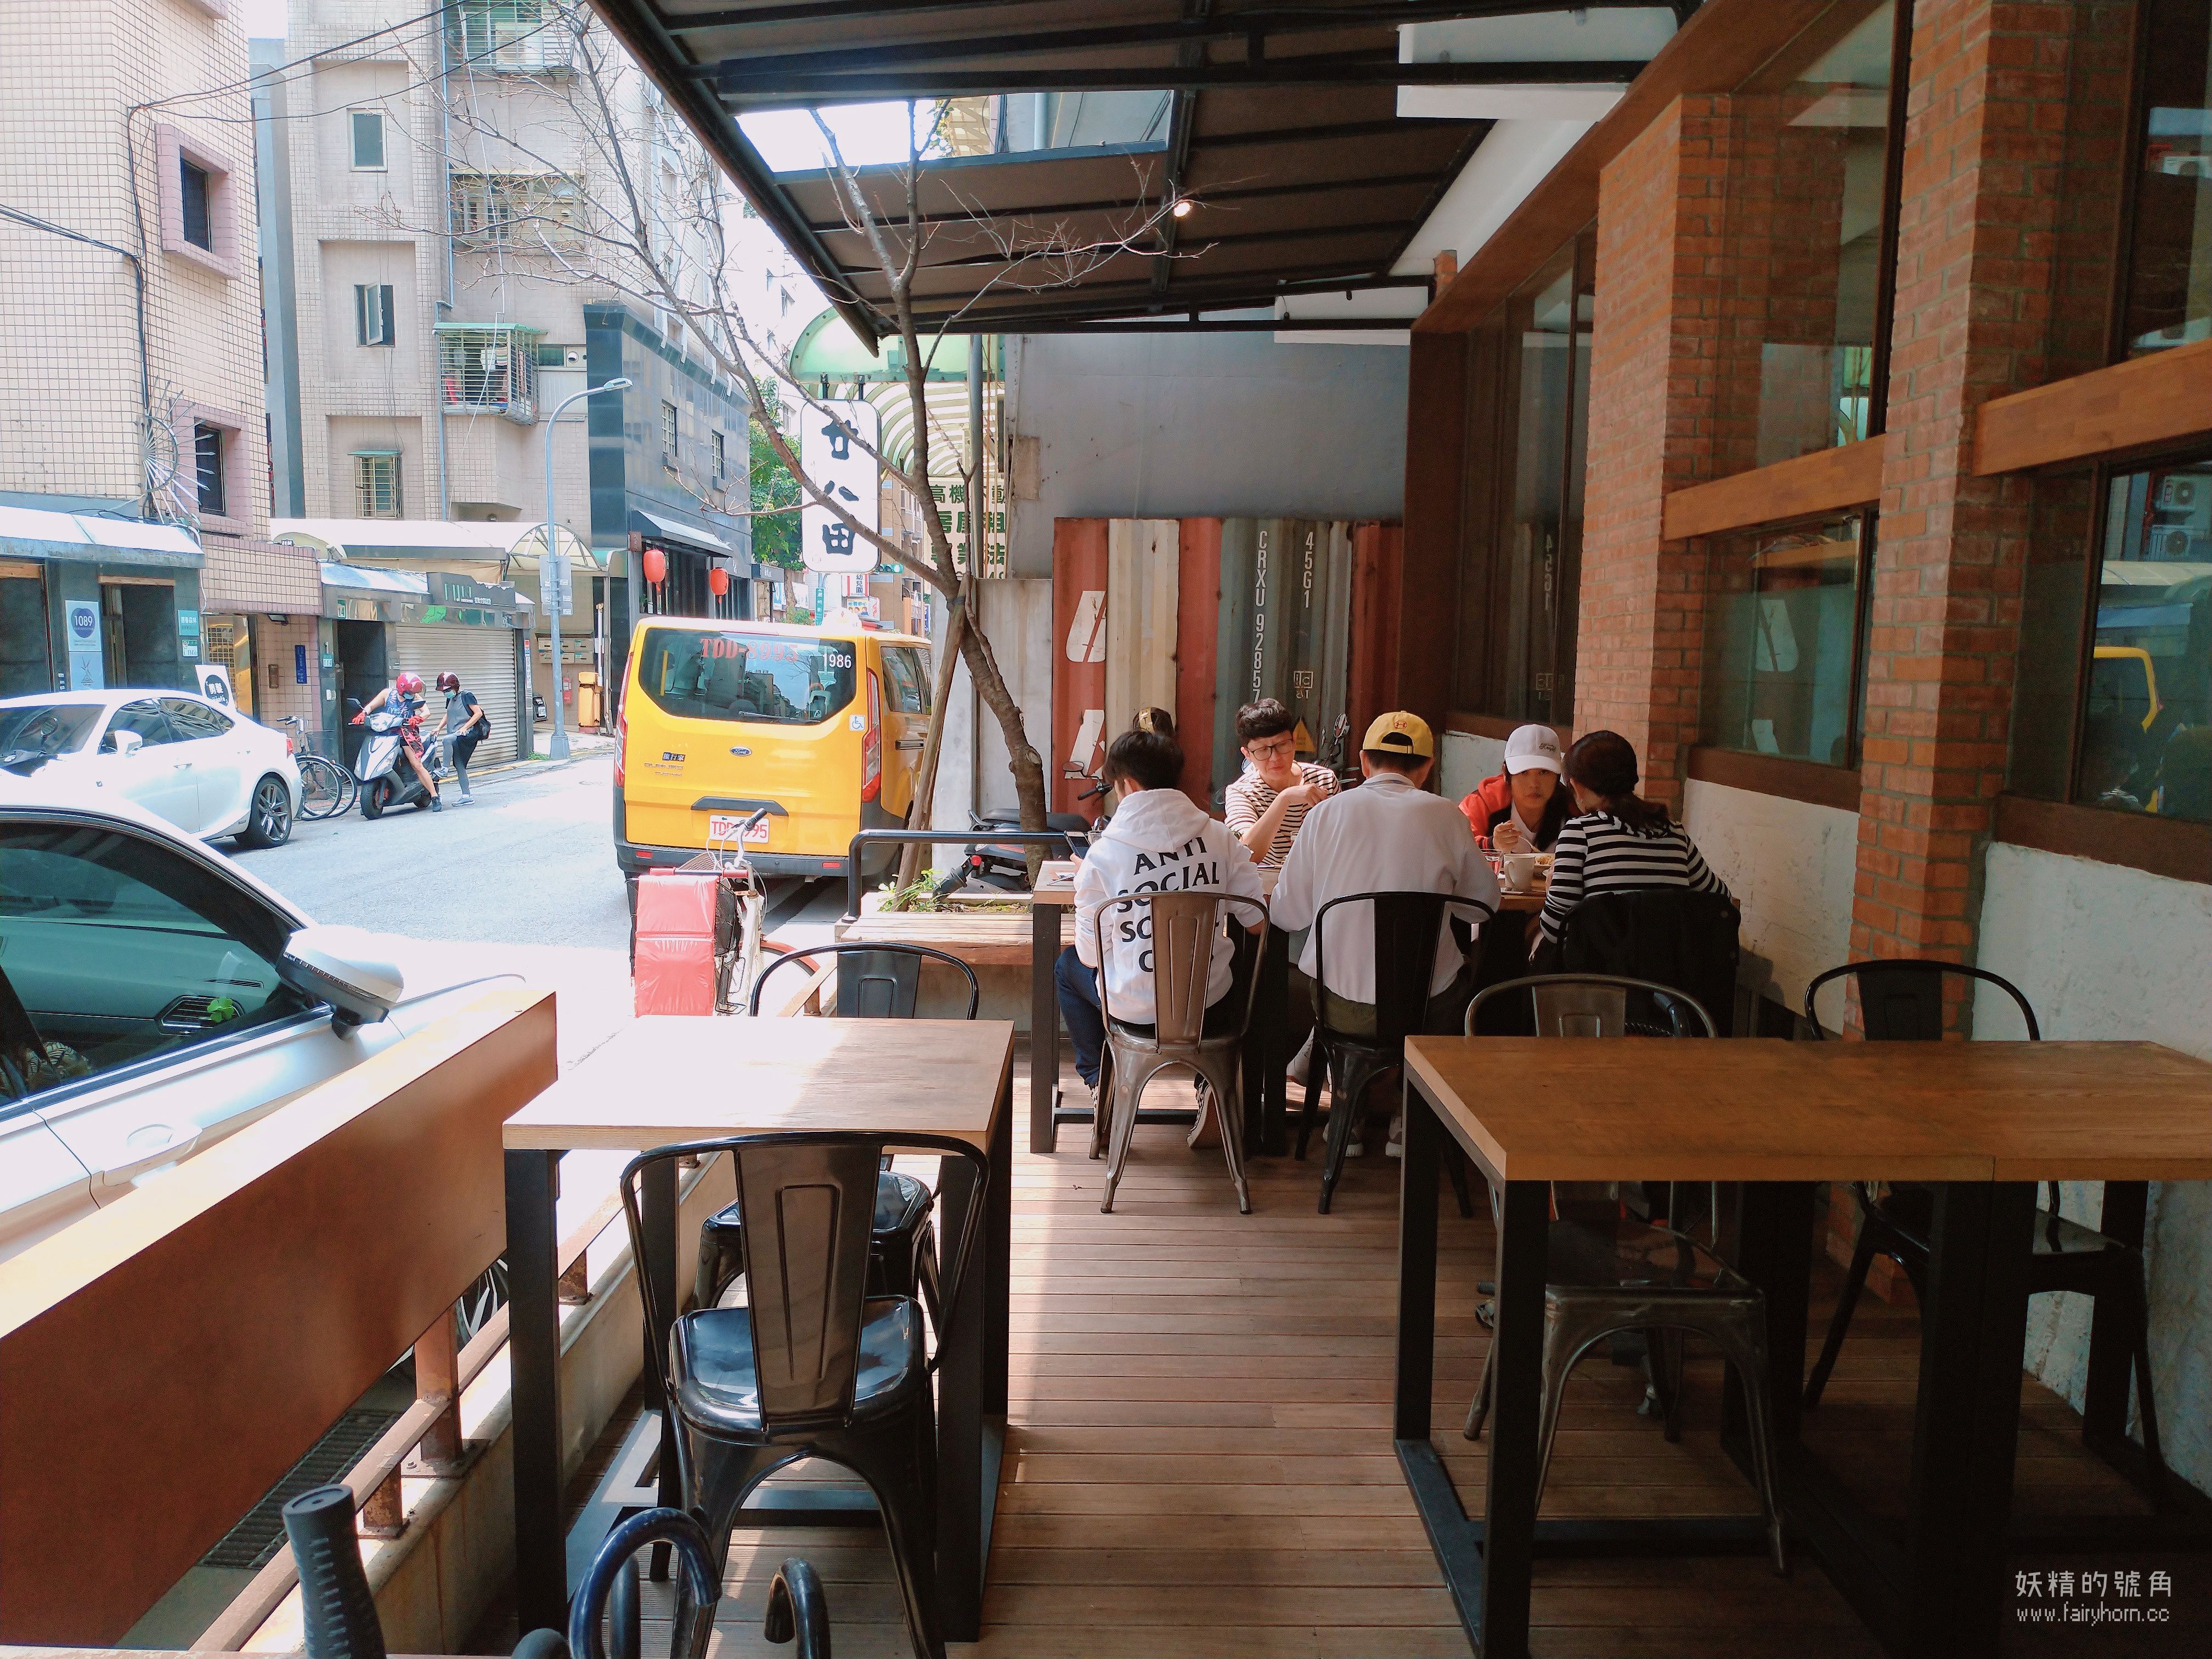 2019 04 05 22 04 27 result - 台北早午餐 | Daylight 光合箱子東門店，在寧靜小巷裡體會慢食愉悅